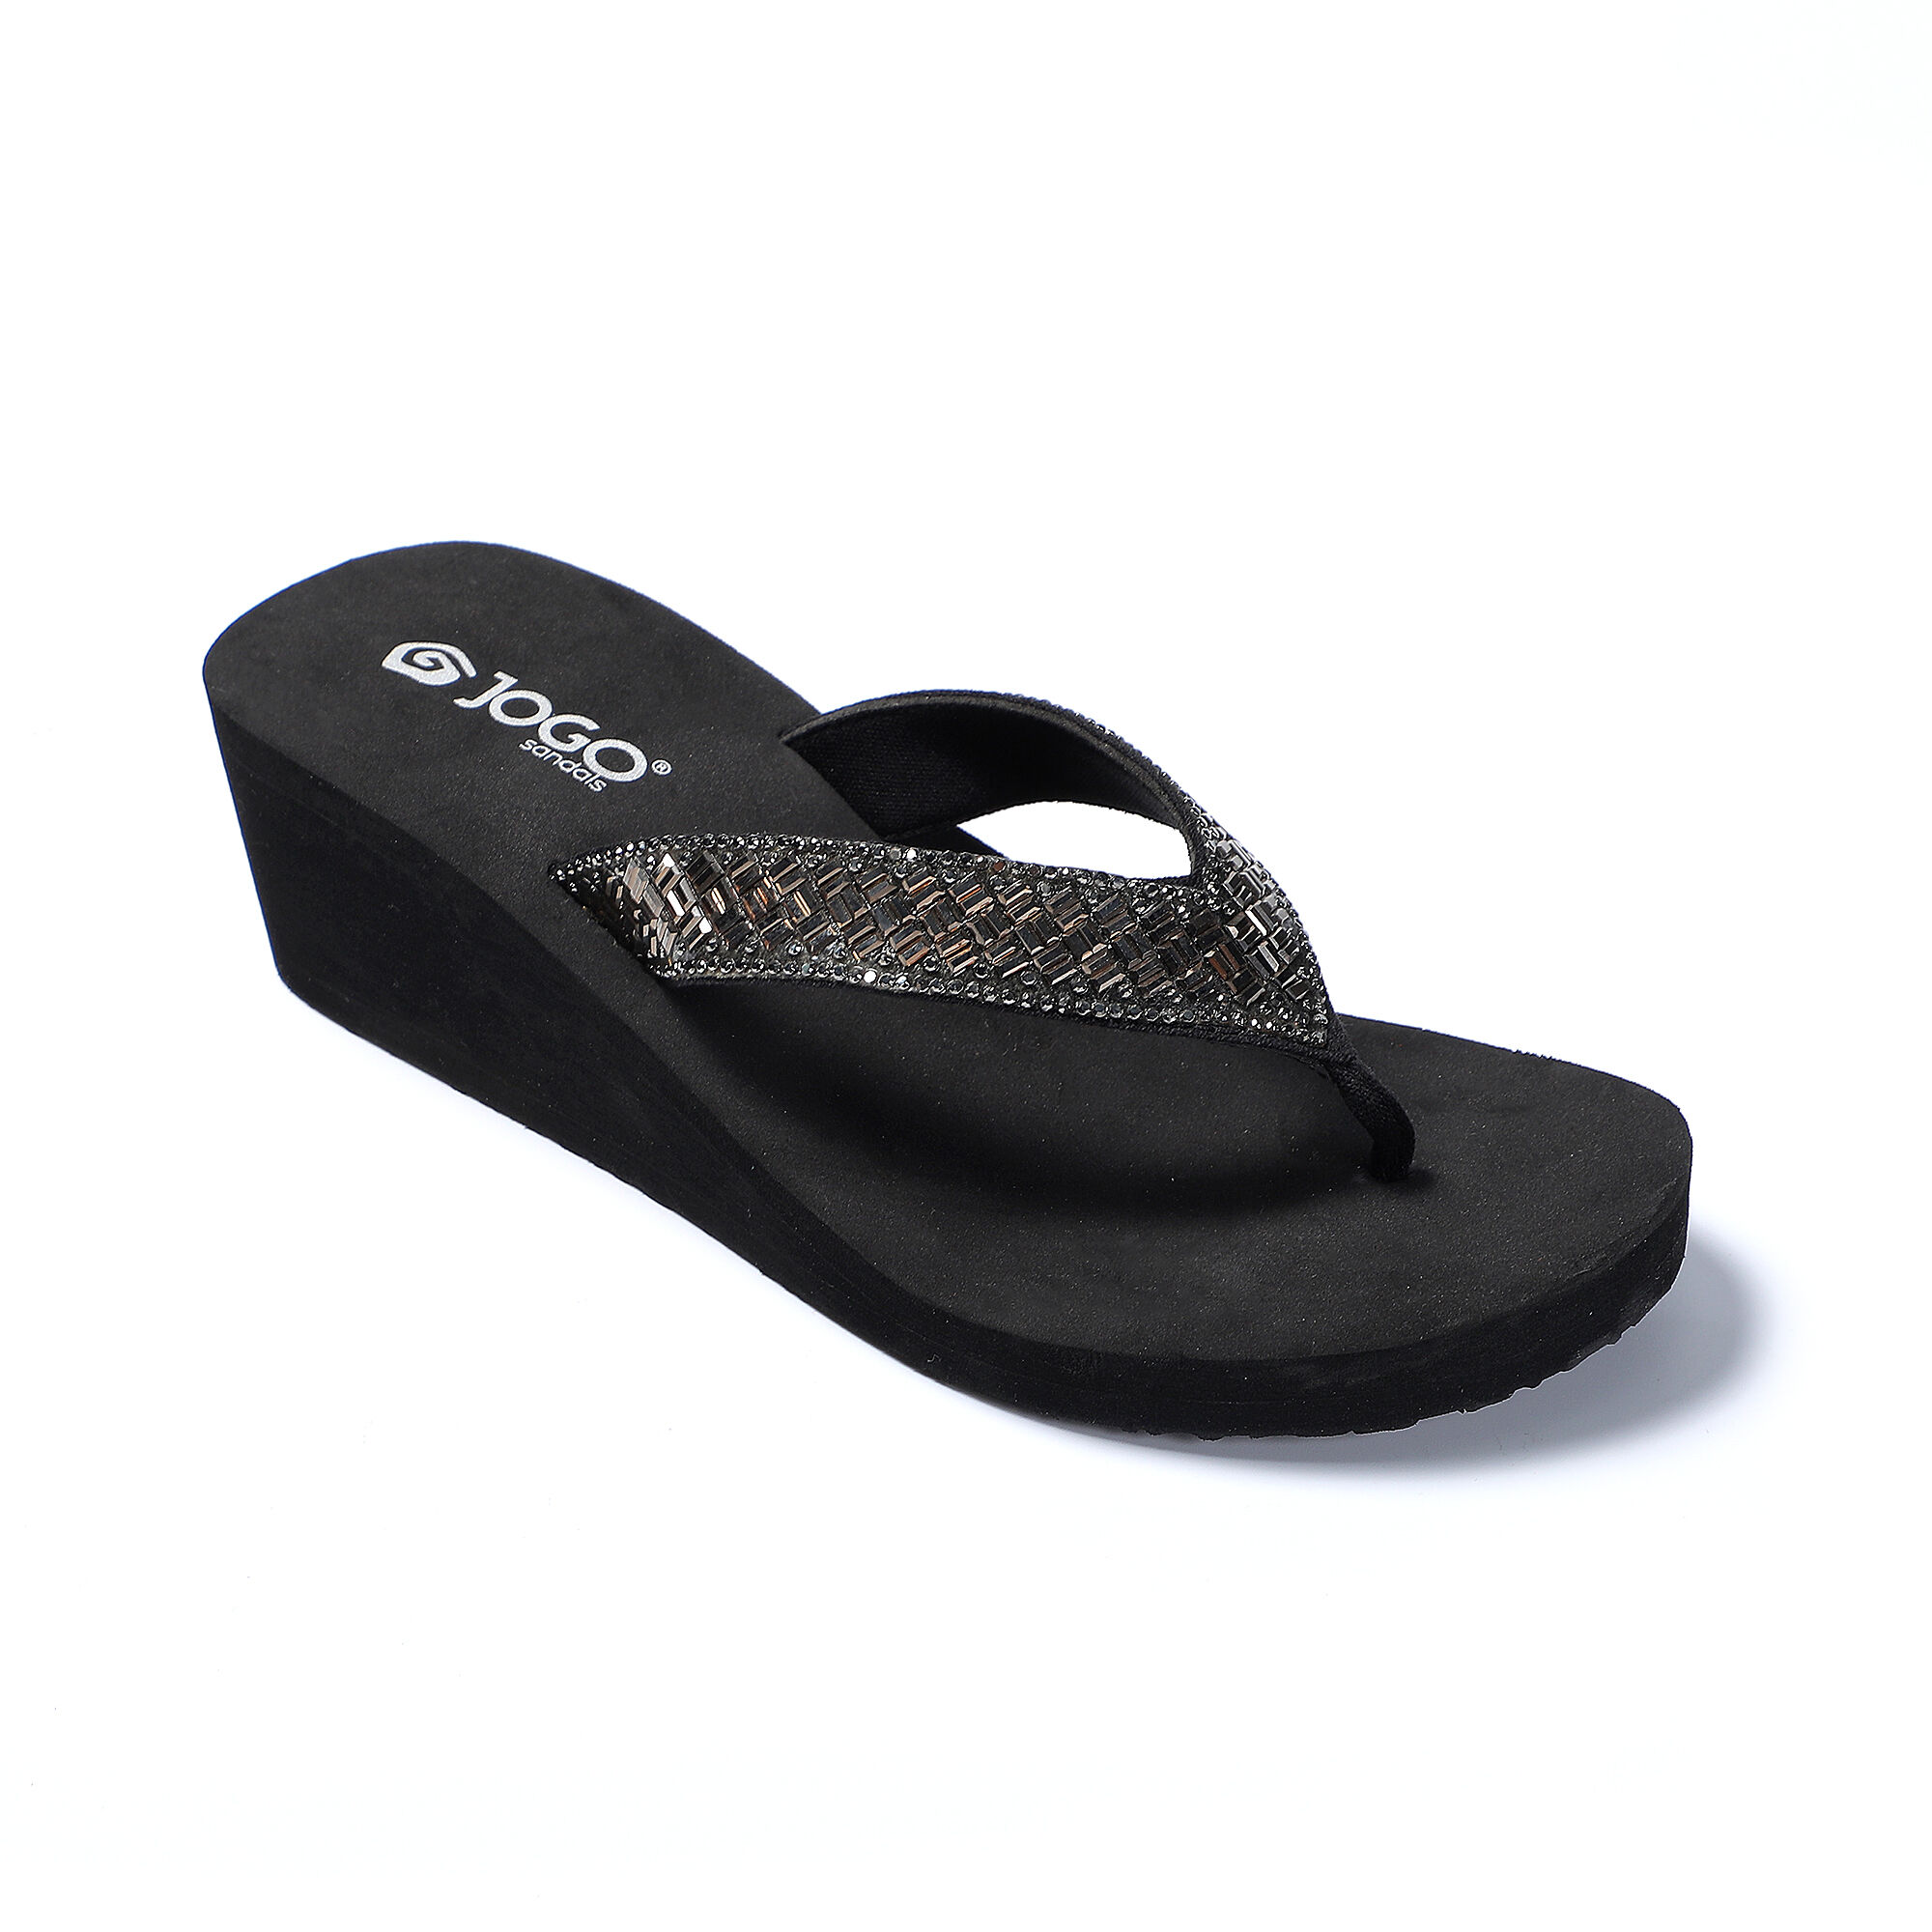 US$32.41-Slippers Women Summer High Heel Sandals New Black High Heels 12cm  Club High Platform Thin Heels Party Girl Show Sandals-Description